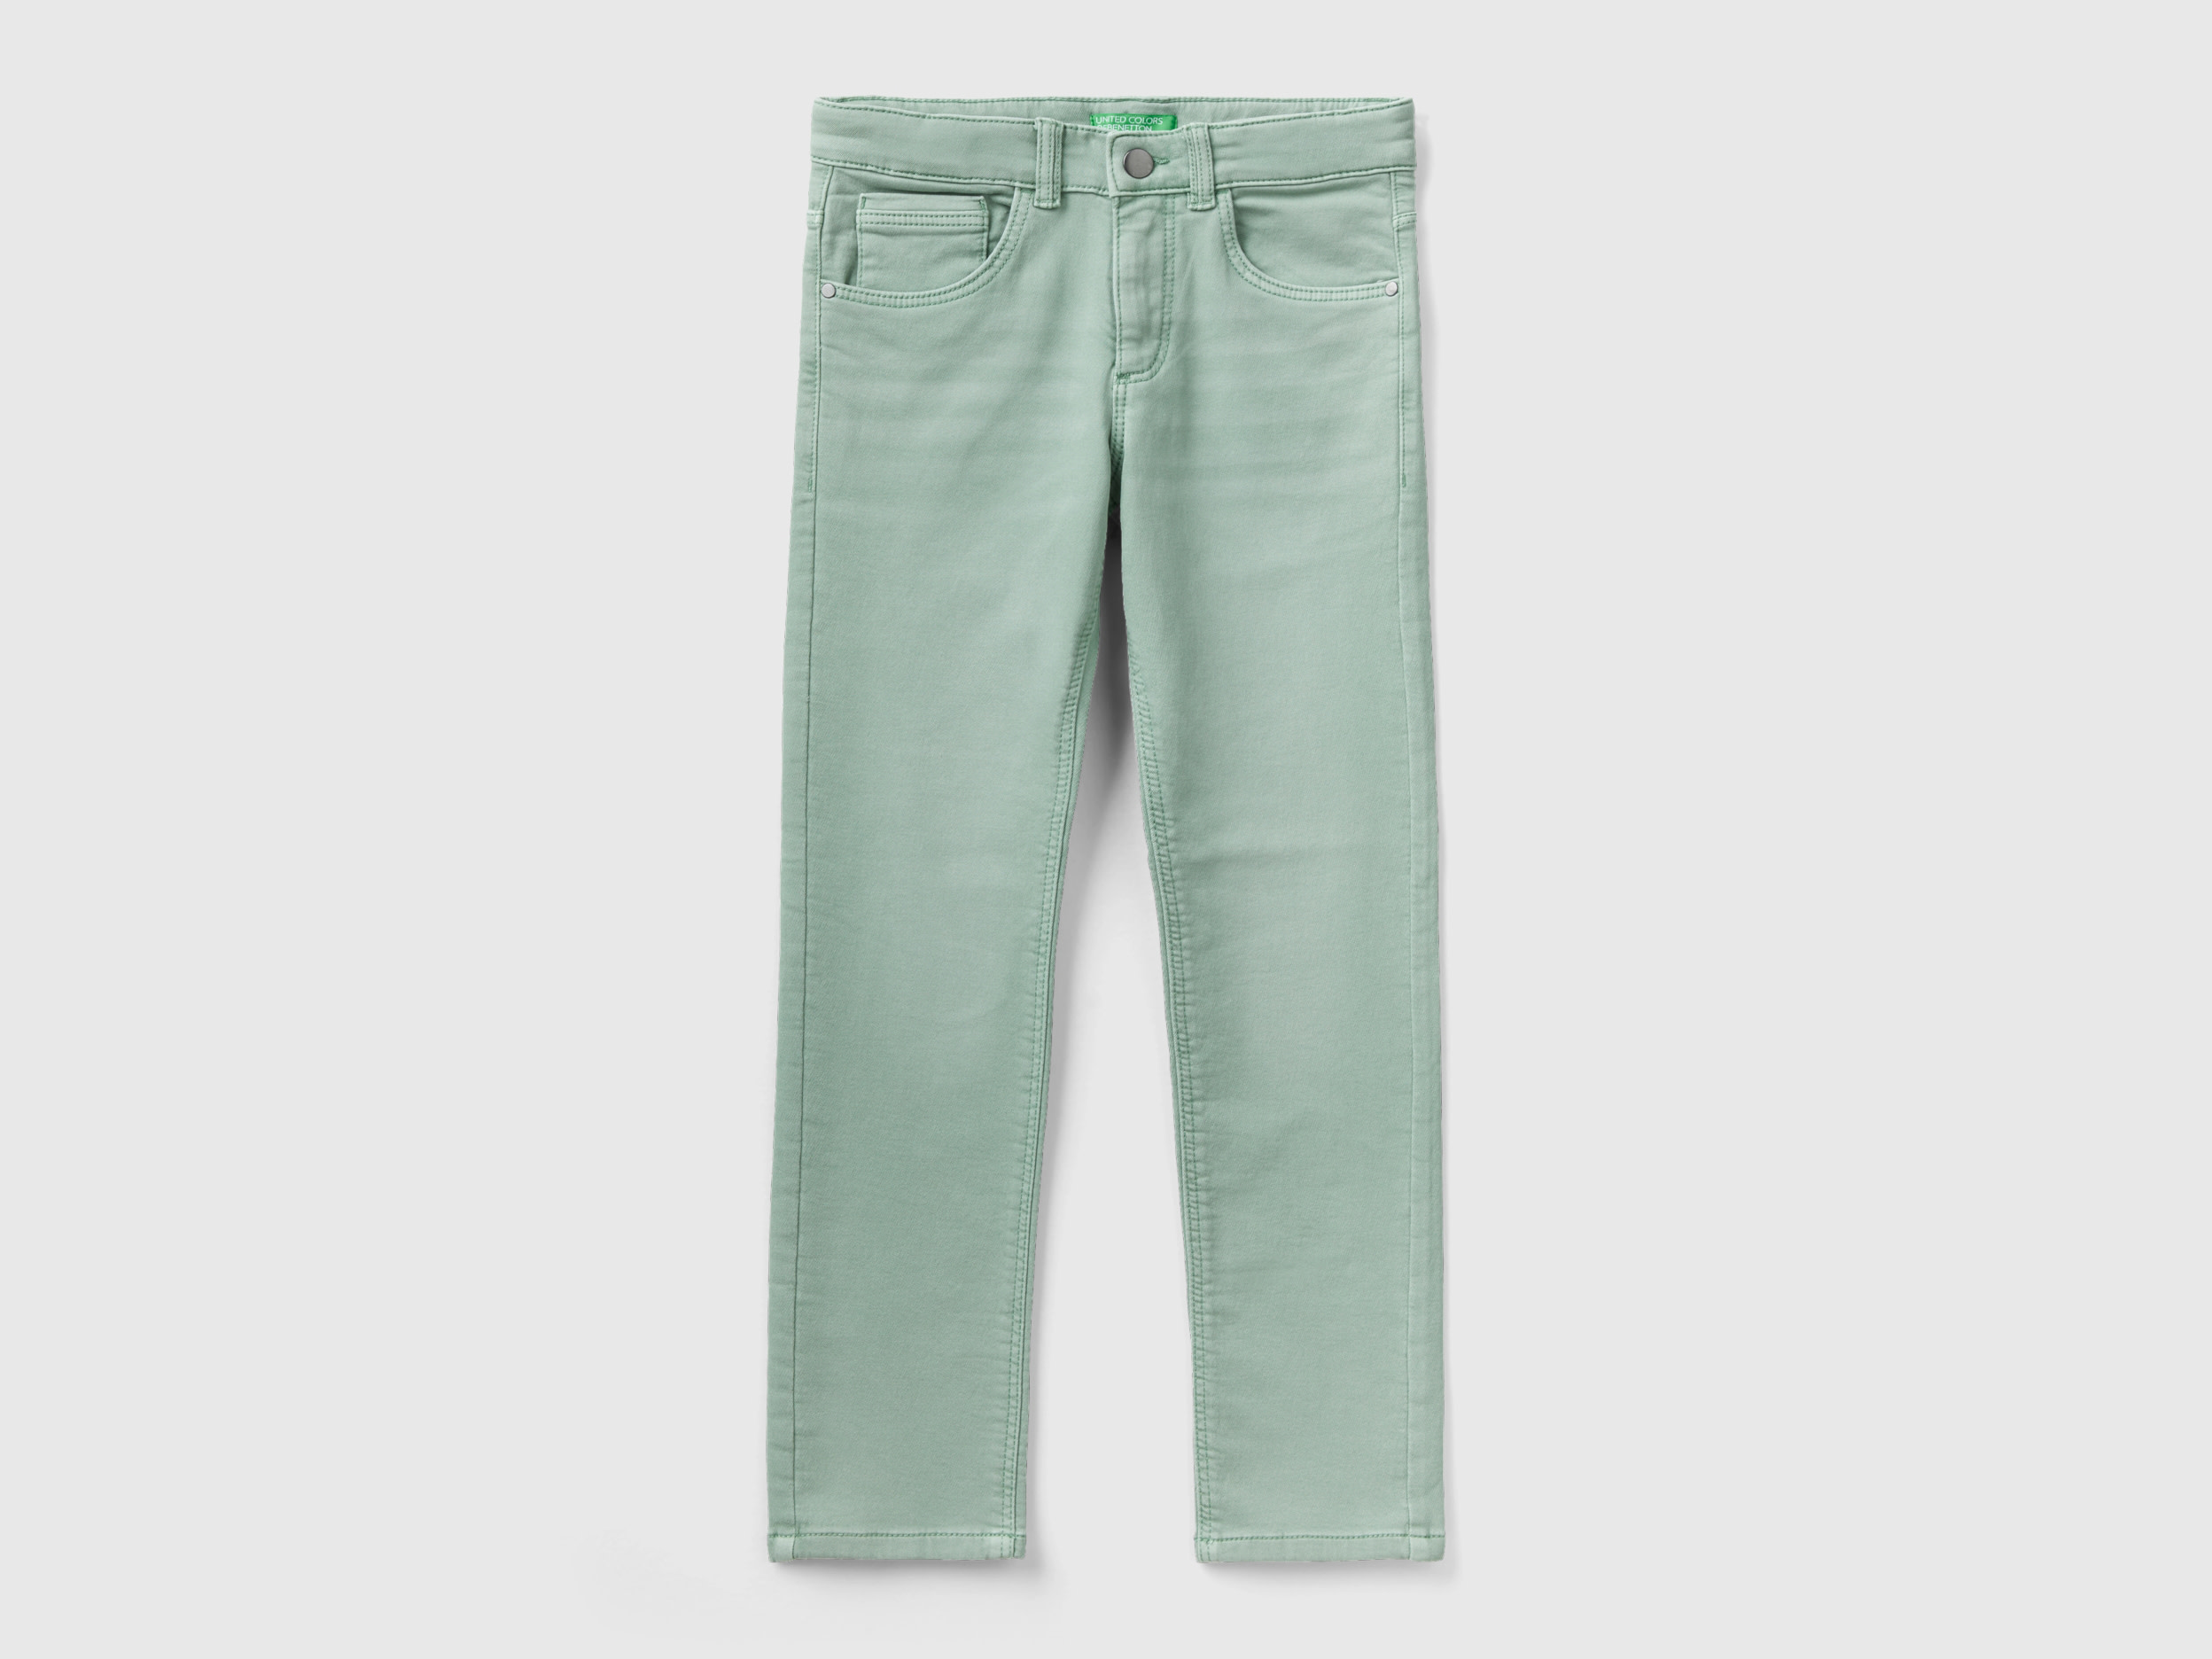 Benetton, Five Pocket Jeans, size L, Aqua, Kids